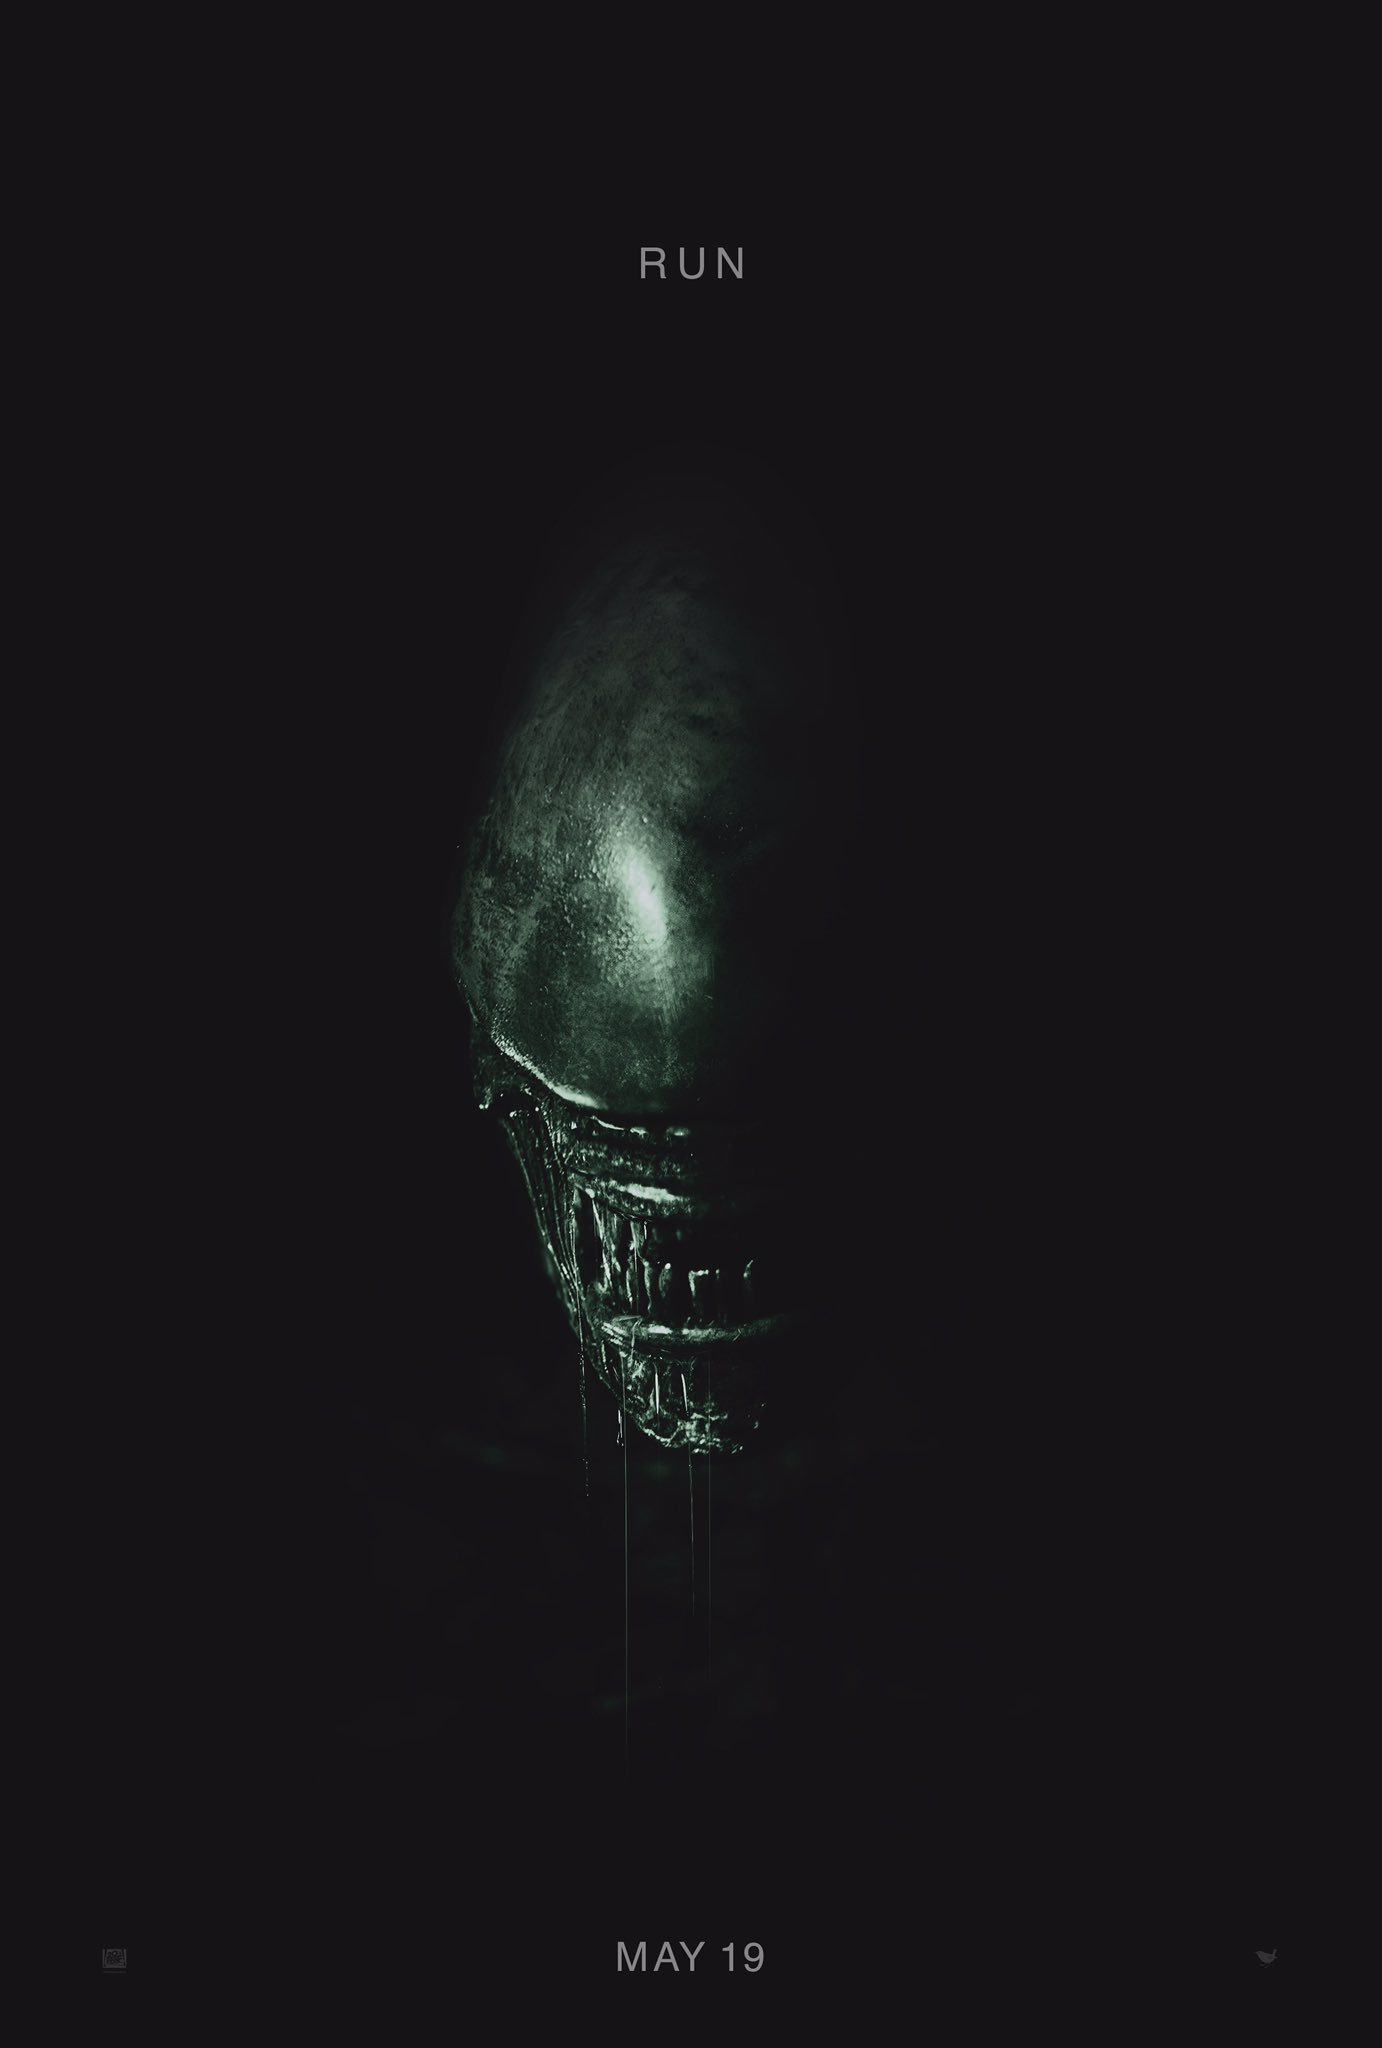 alien-covenant-premiere-affiche